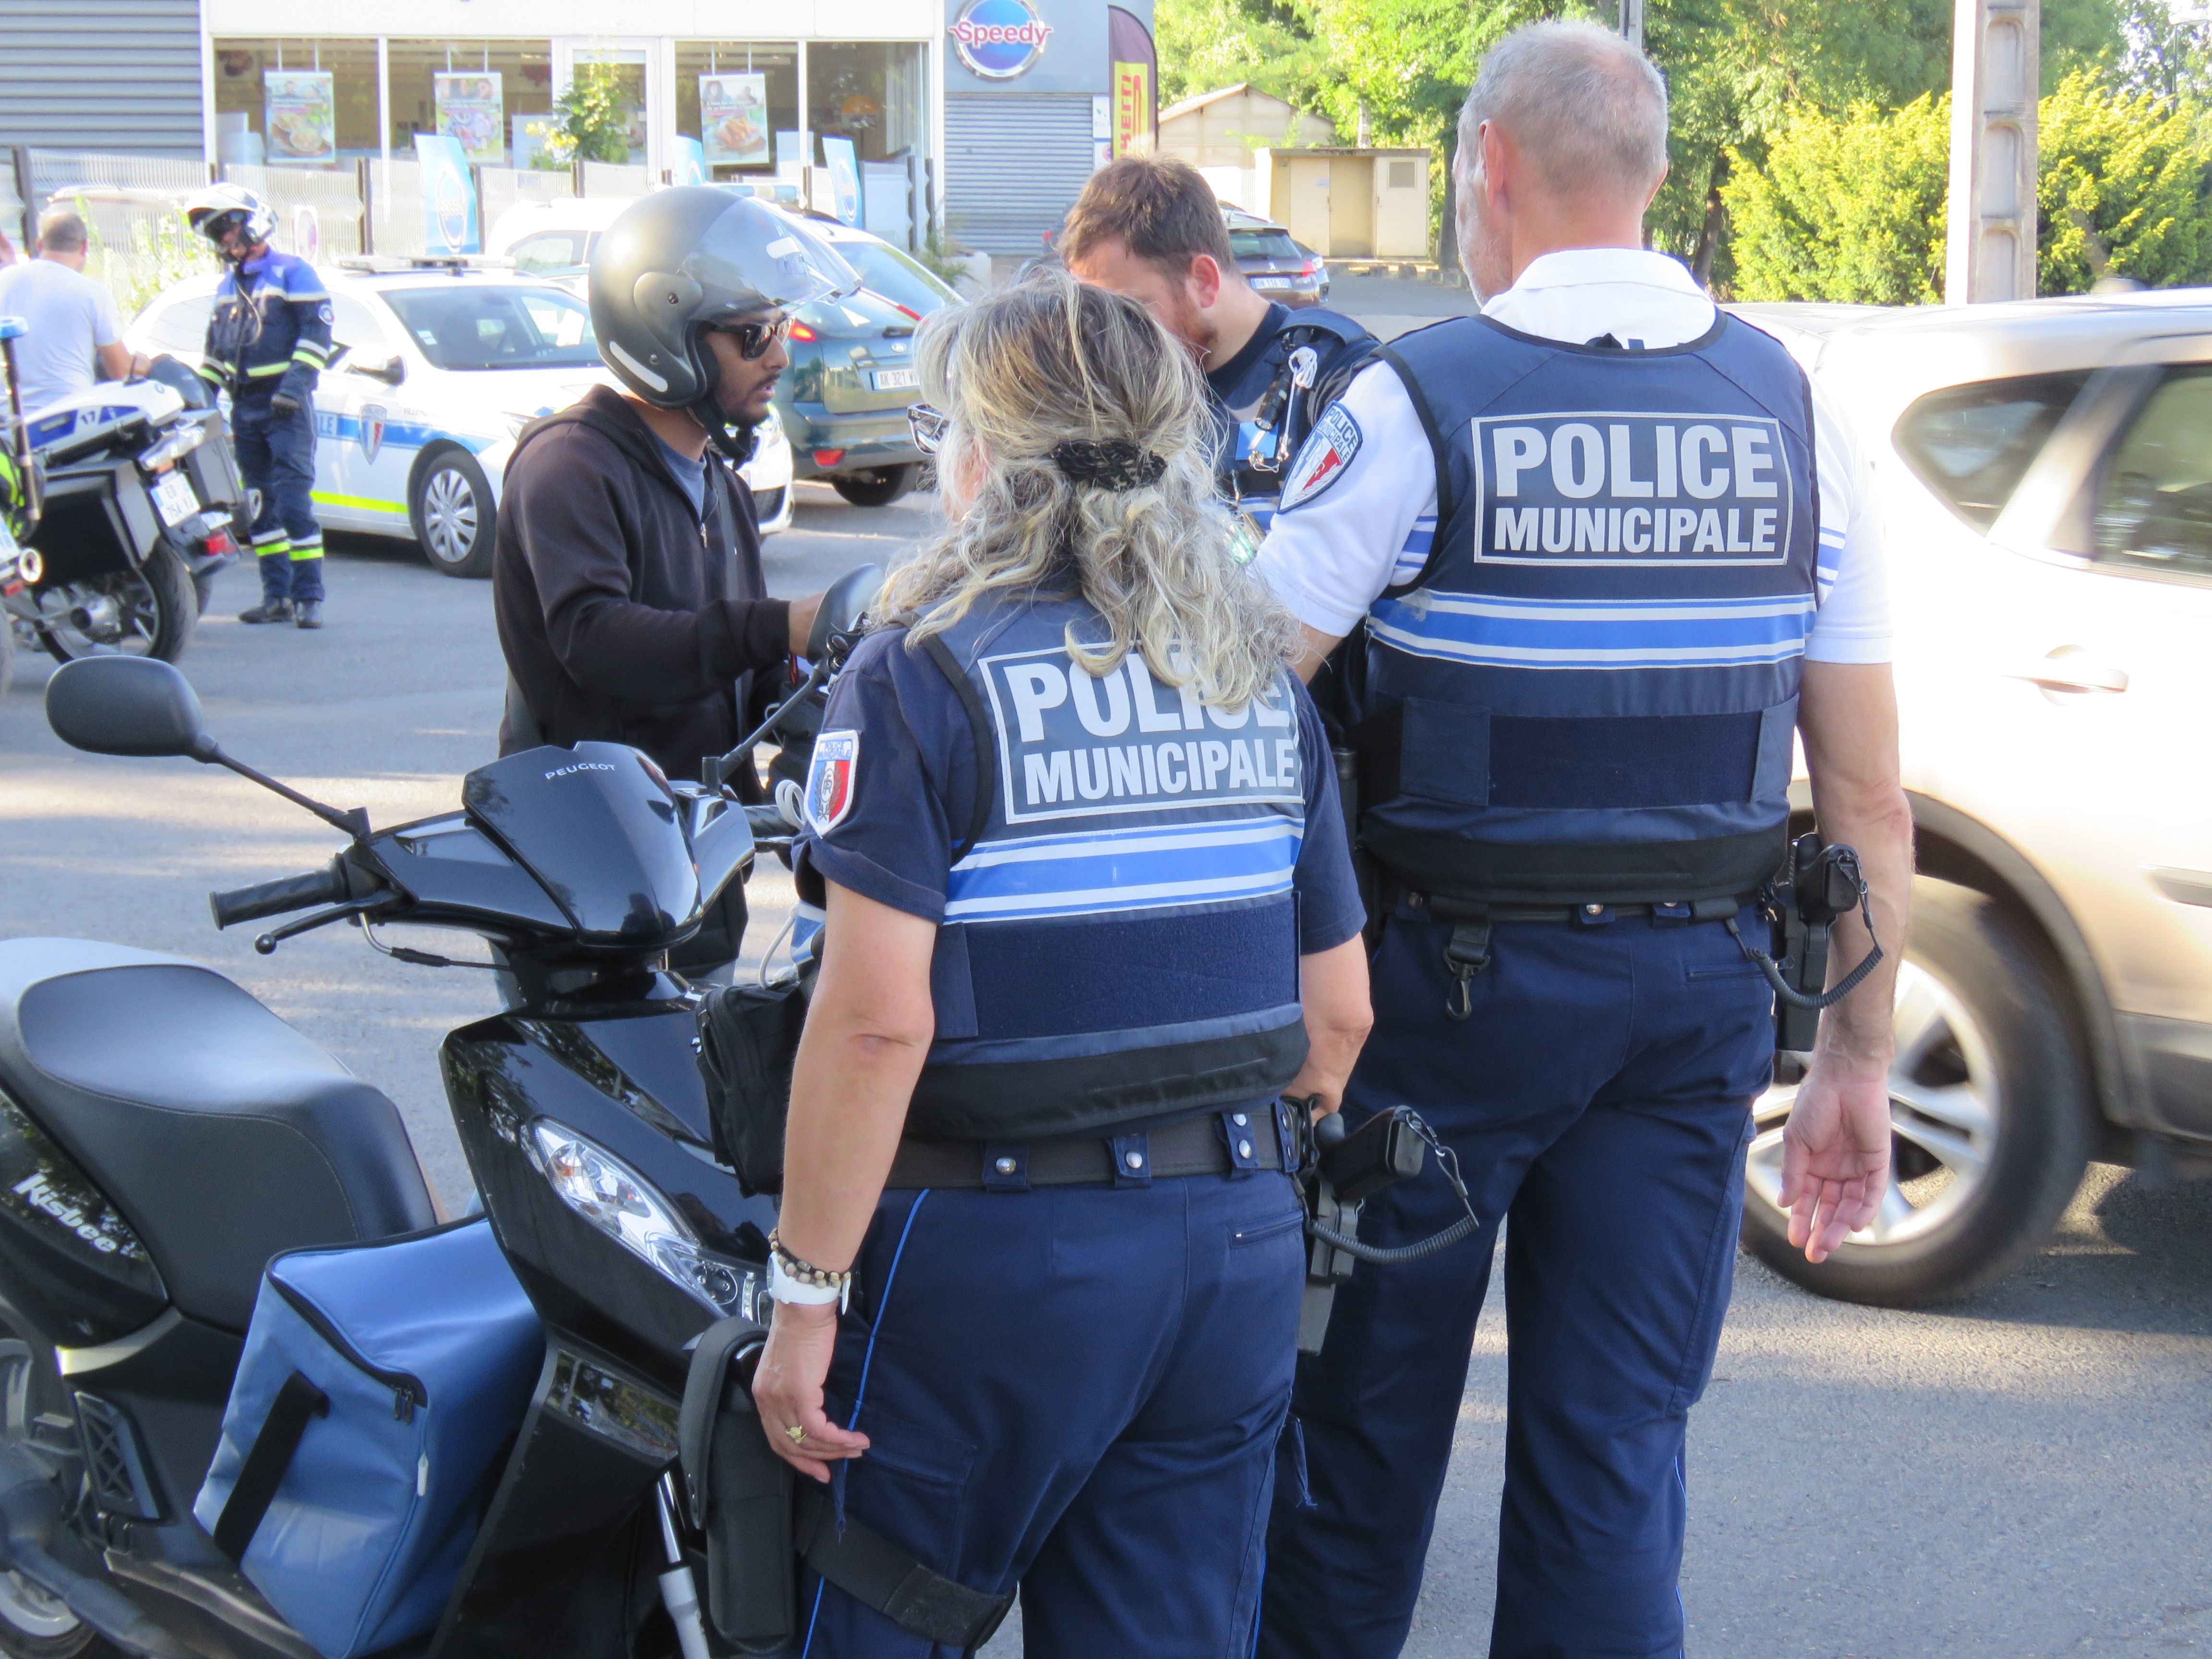 Villeparisis, le lundi 8 août 2022. Les autorités ont procédé au contrôle de 39 véhicules, dont 16 deux roues. 5 infractions ont été constatées, dont un défaut d'assurance sur un moto.